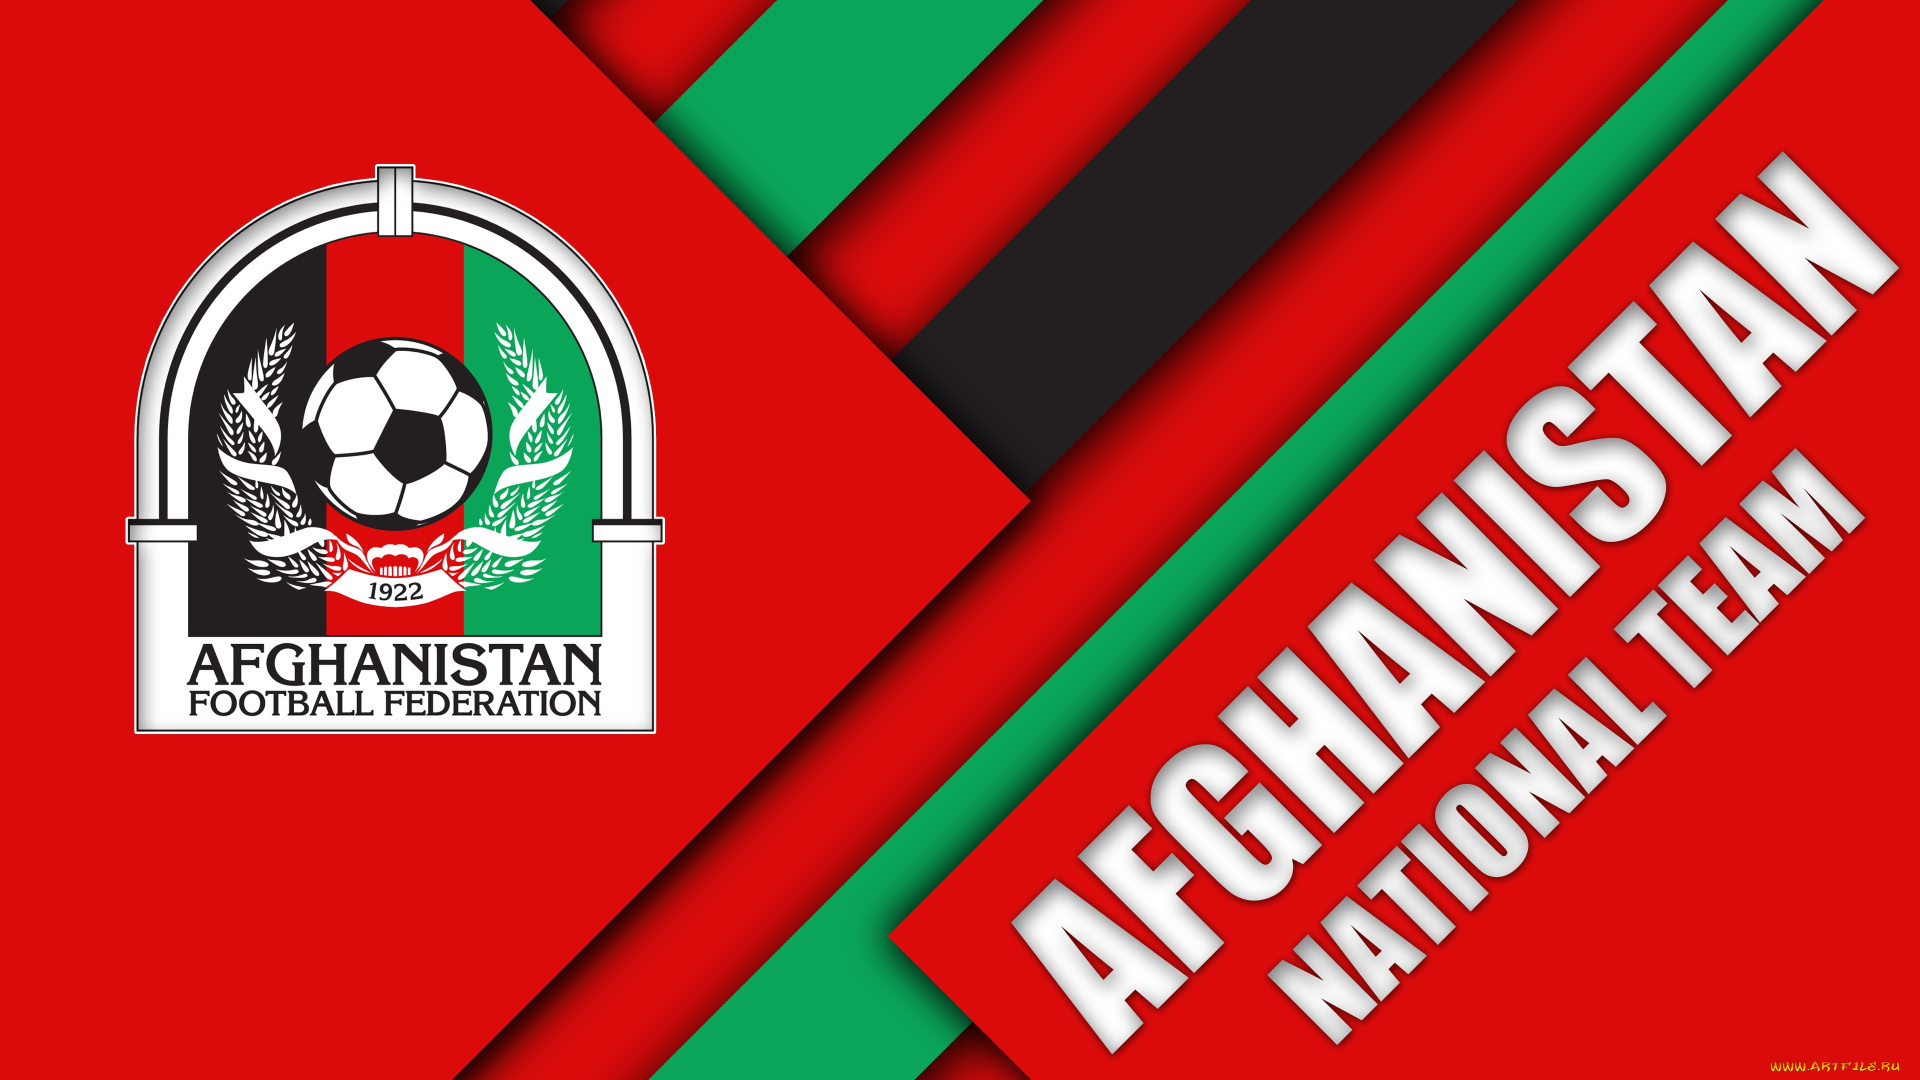 афганская, футбольная, сборная, спорт, эмблемы, клубов, футбол, афганская, футбольная, сборная, afghanistan, football, national, team, федерация, афганистан, logo, emblem, логотип